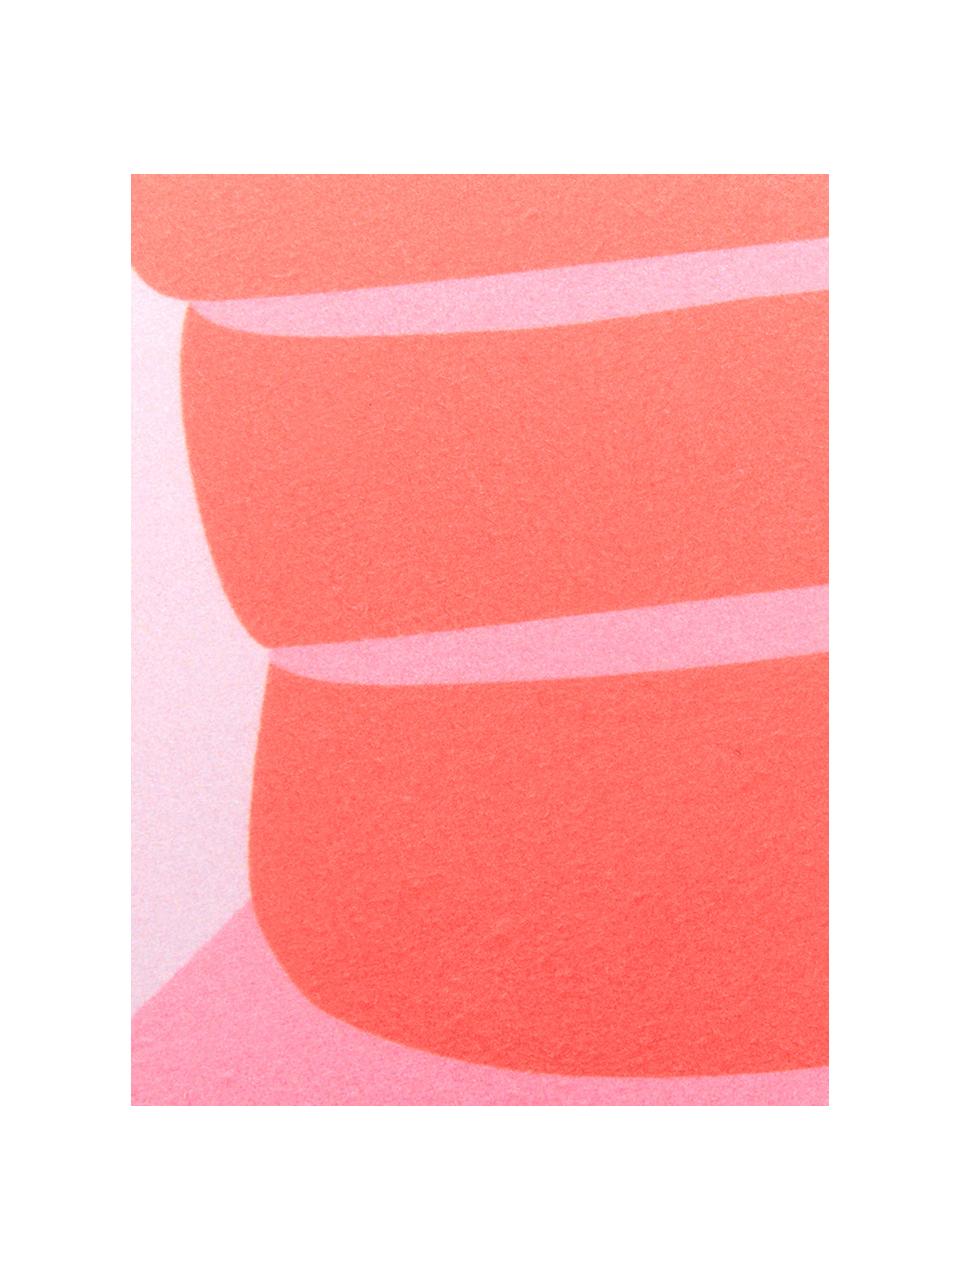 Tenká plážová osuška s motivem humra Sebastian, 55 % polyester, 45 % bavlna
Velmi nízká gramáž, 340 g/m², Růžová, červená, Š 70 cm, D 150 cm